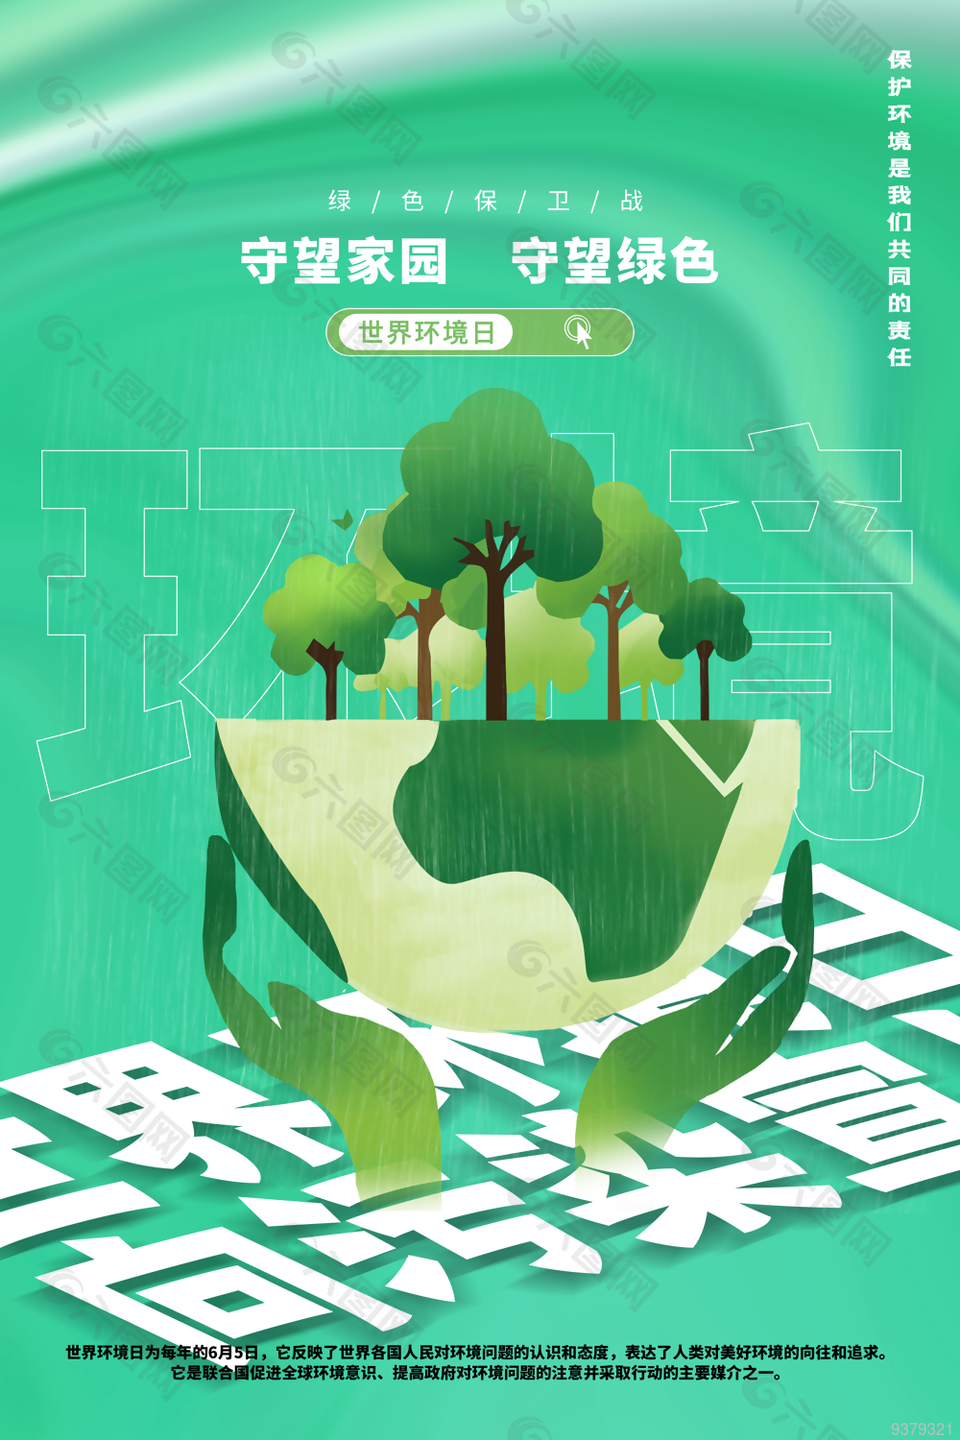 世界环境日海报设计